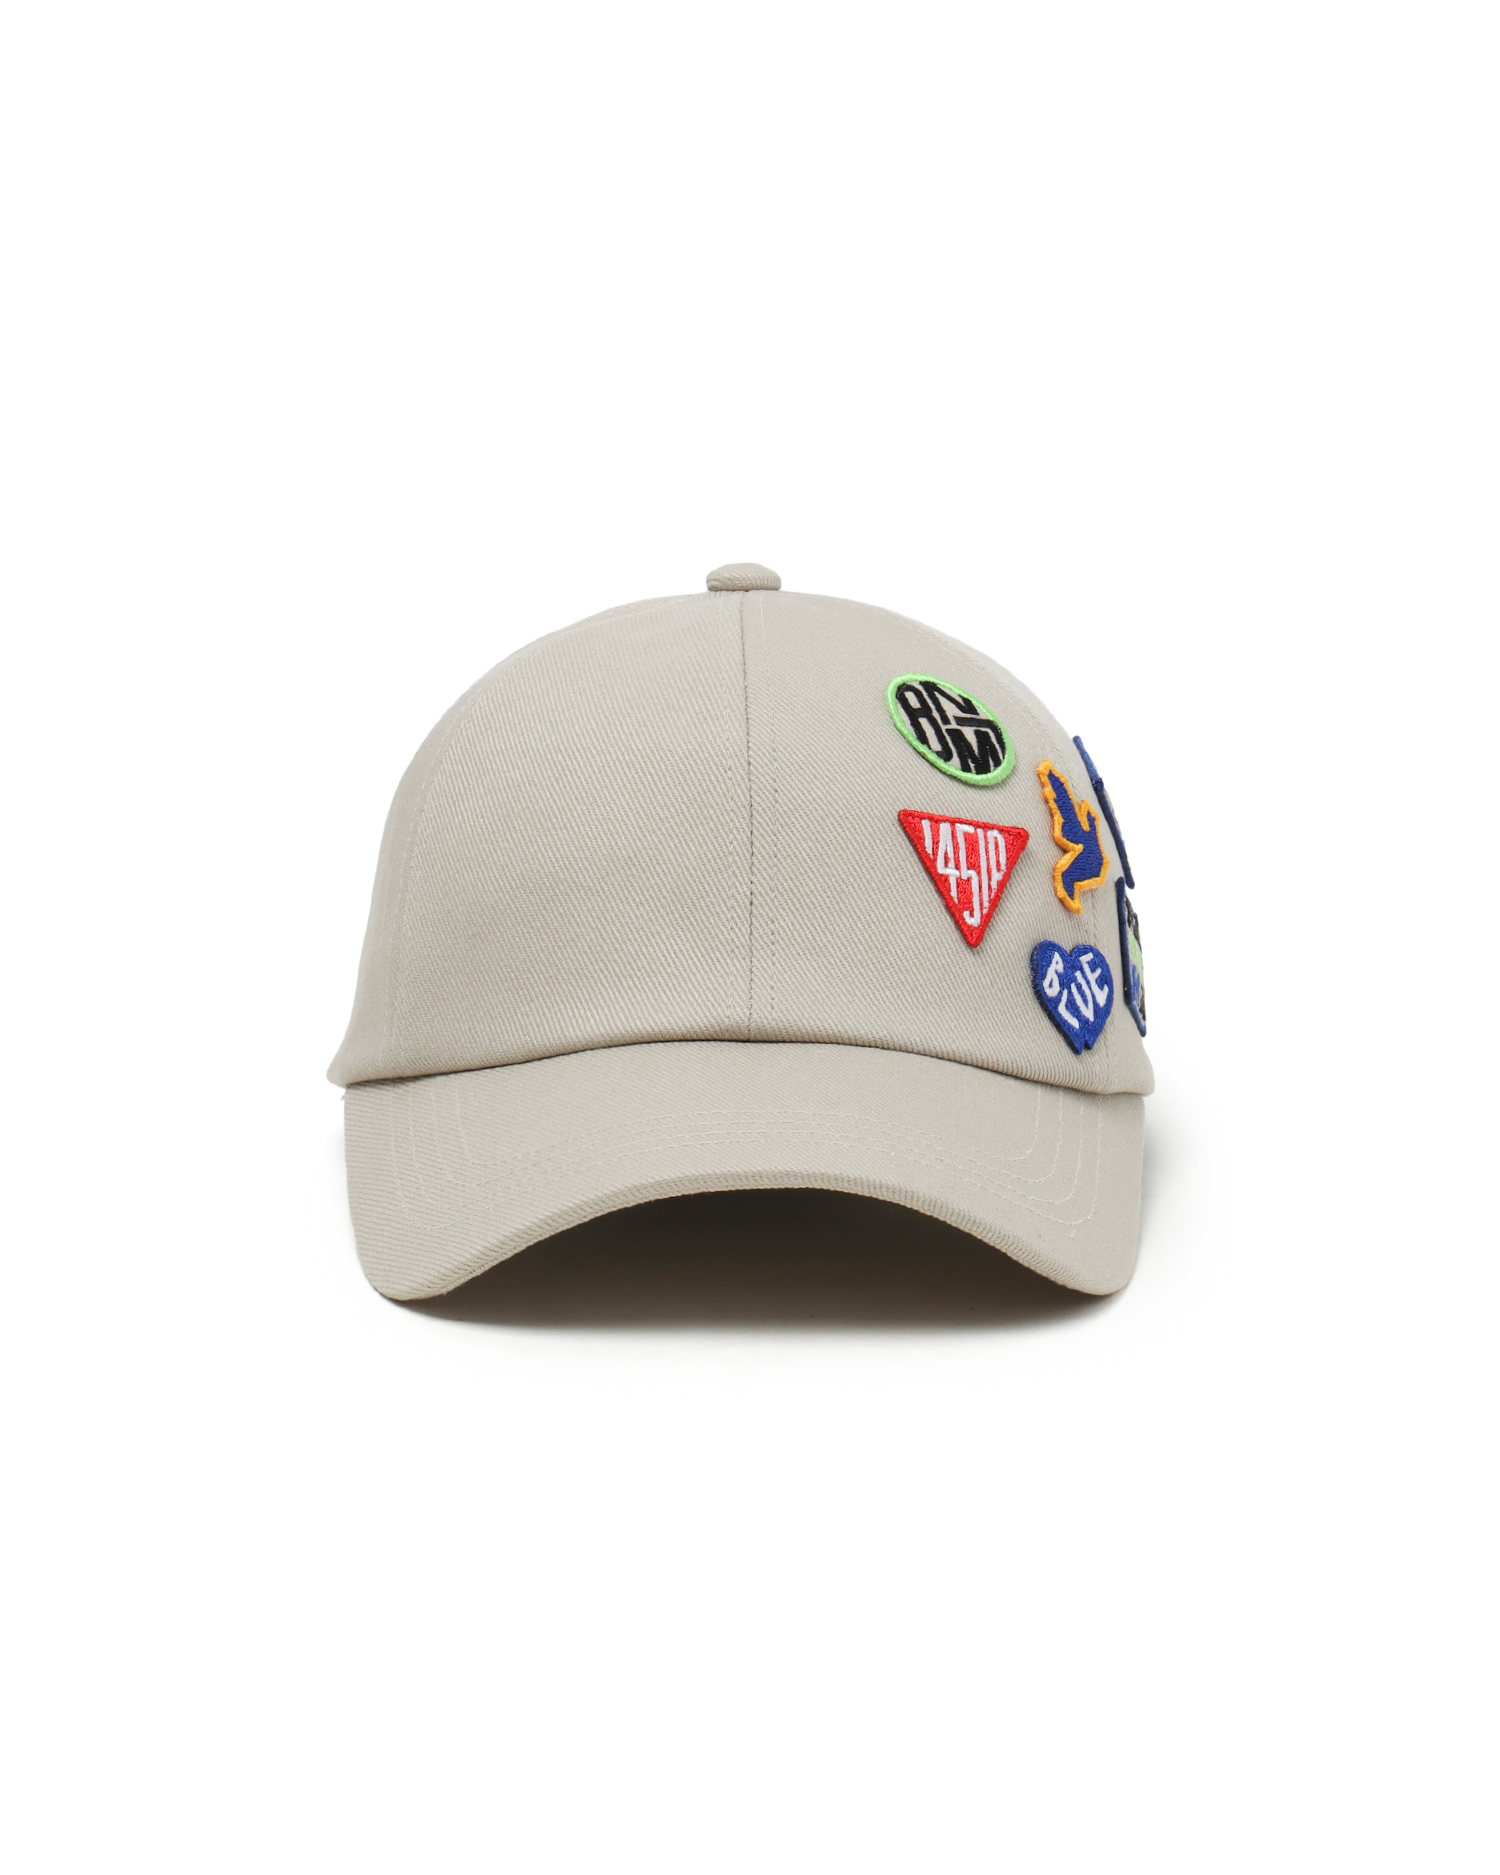 ADER error Badge cap| ITeSHOP